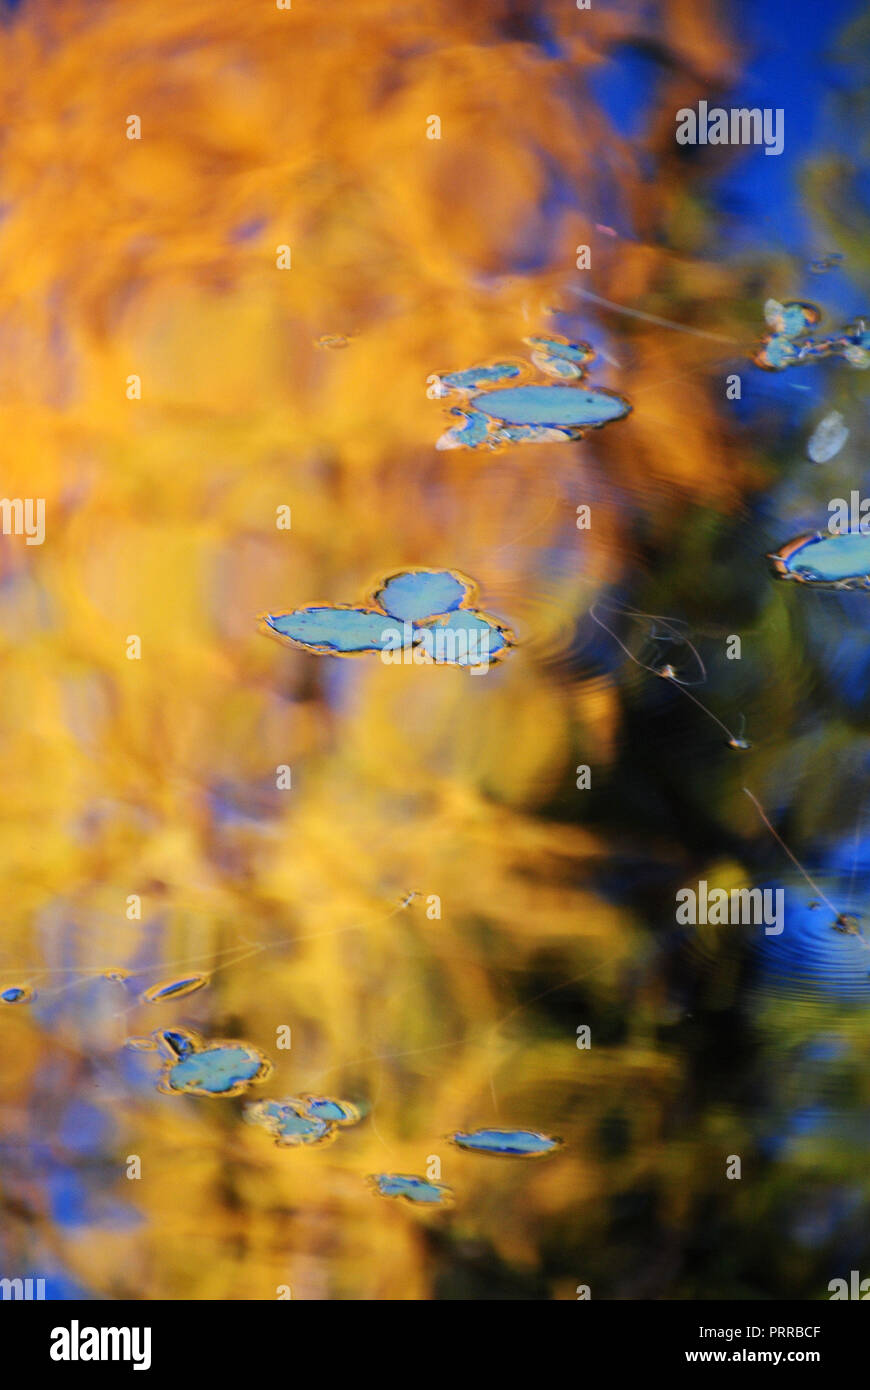 Reflejo de otoño los árboles en el agua, con verdes waterlily flotando en la superficie, creando una abstracta y borrosa dorado, rojo, azul, fondo marrón Foto de stock